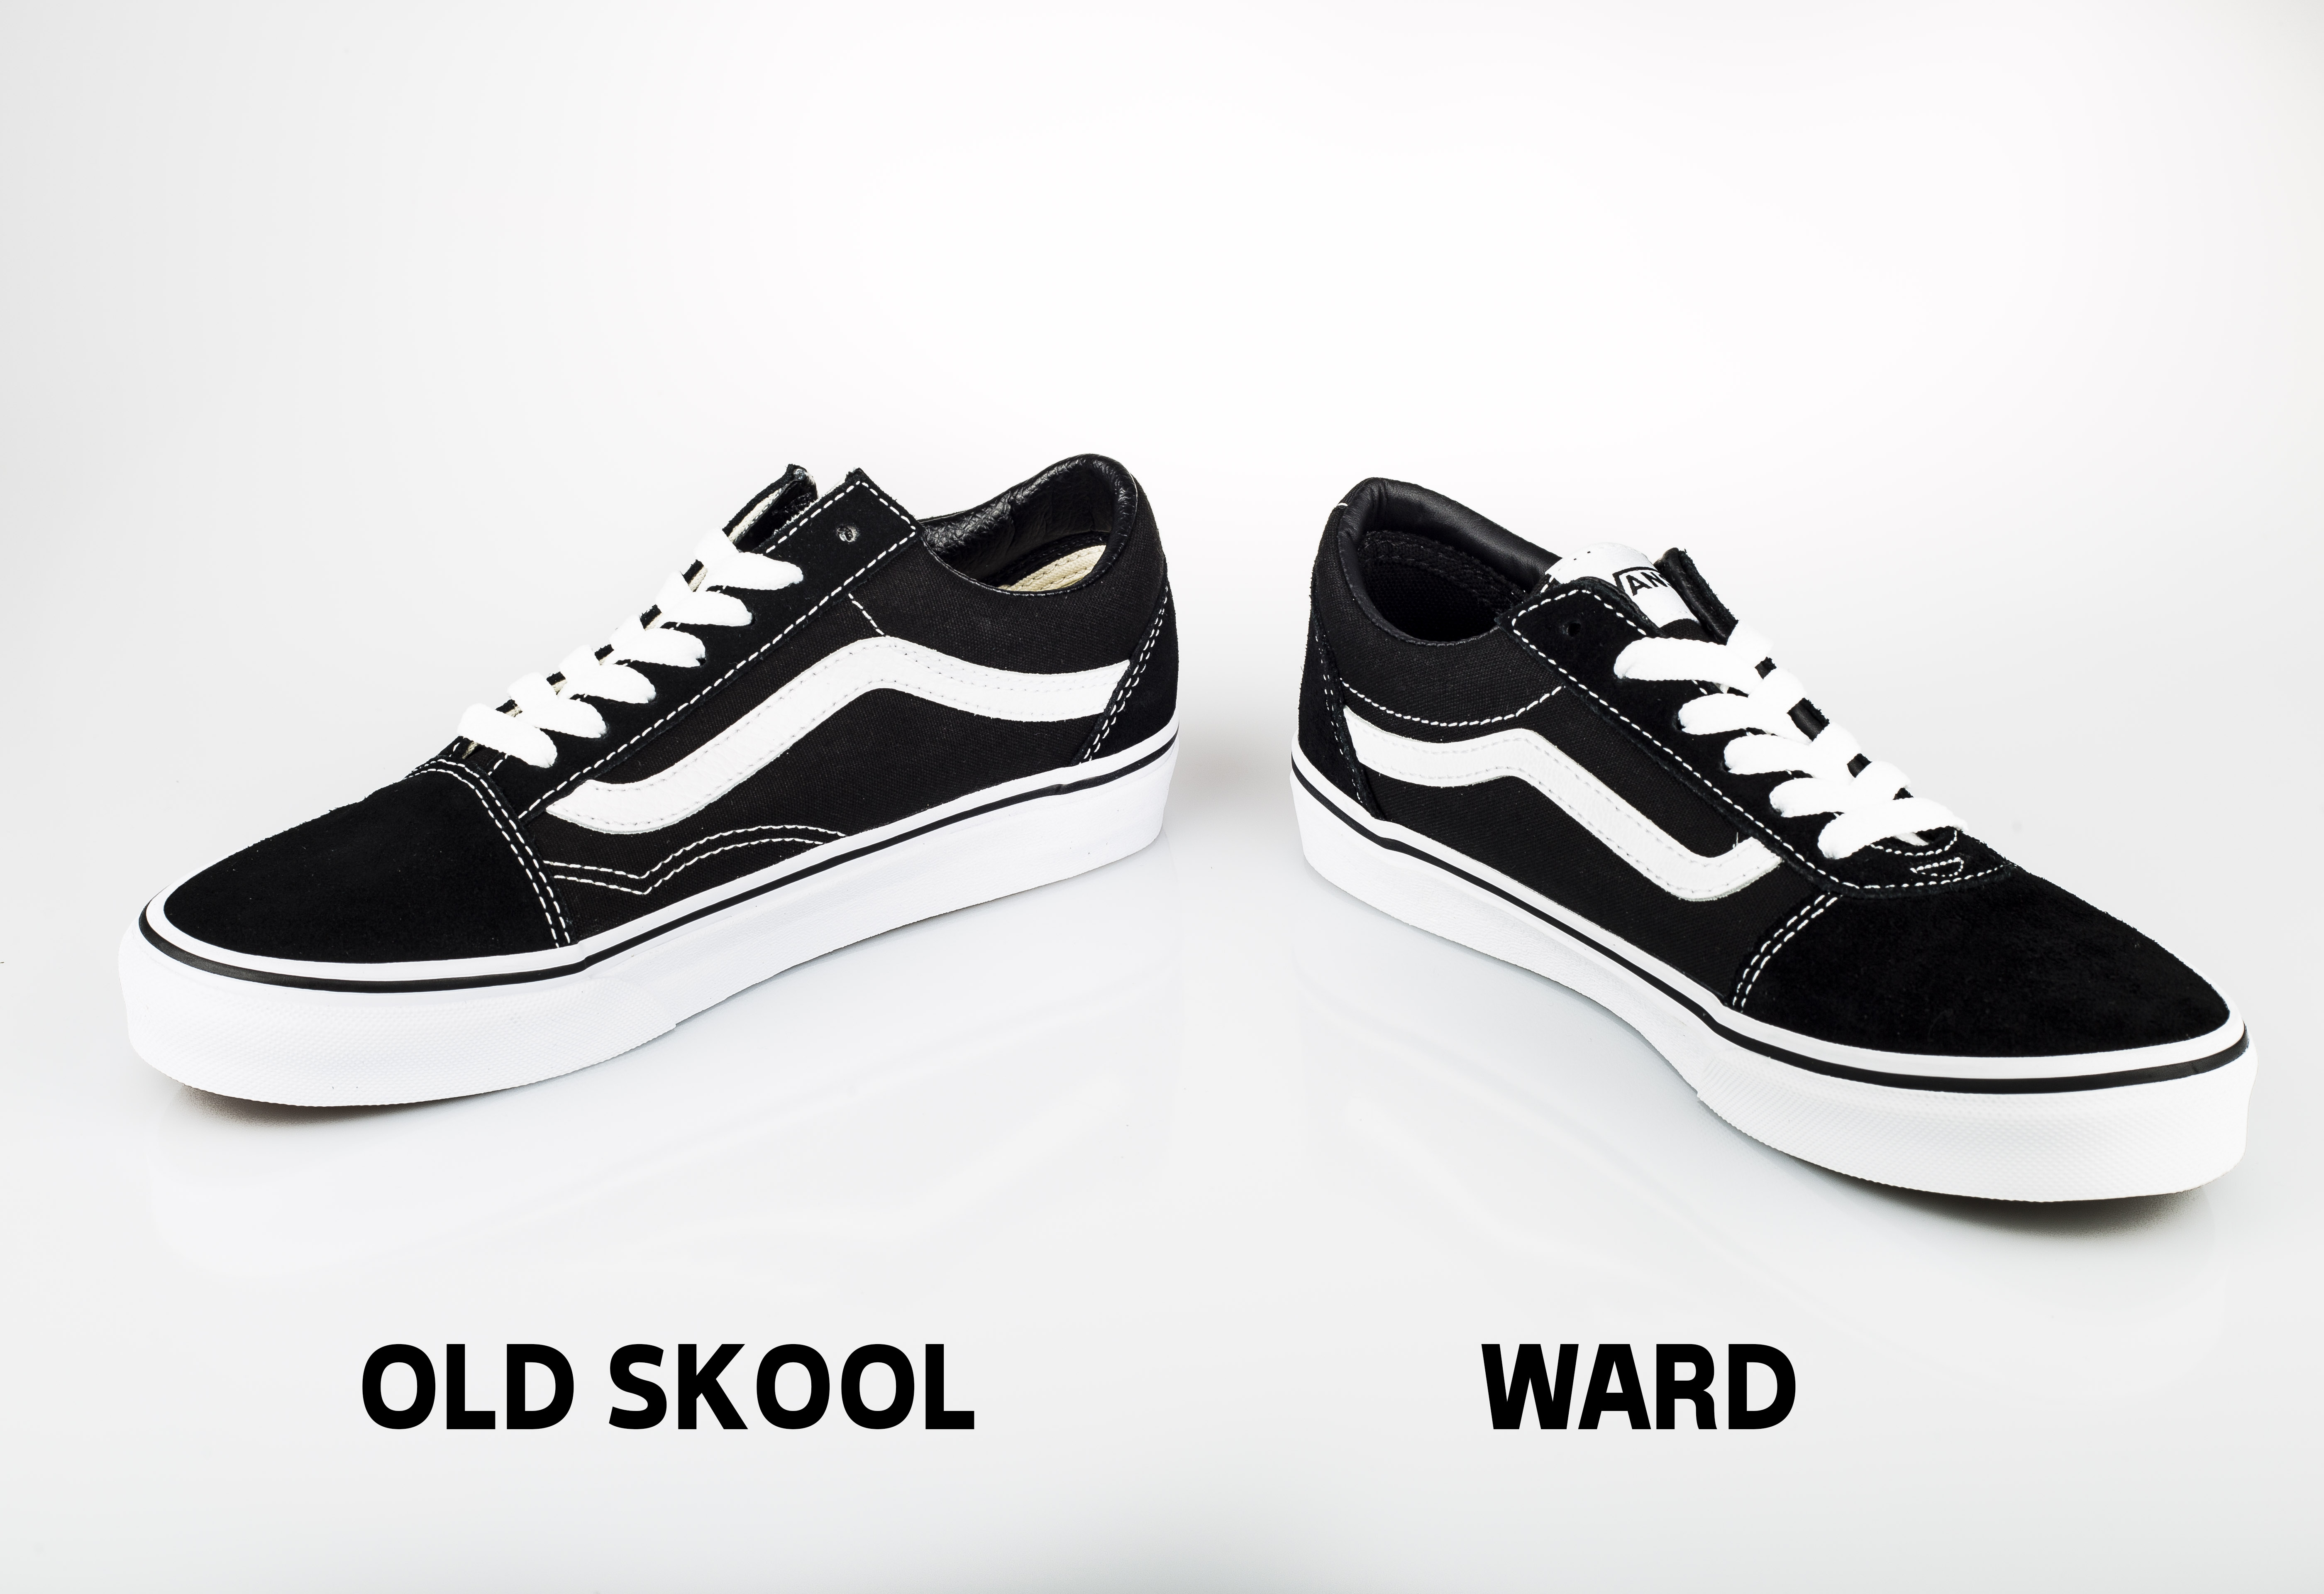 vans ward or old skool